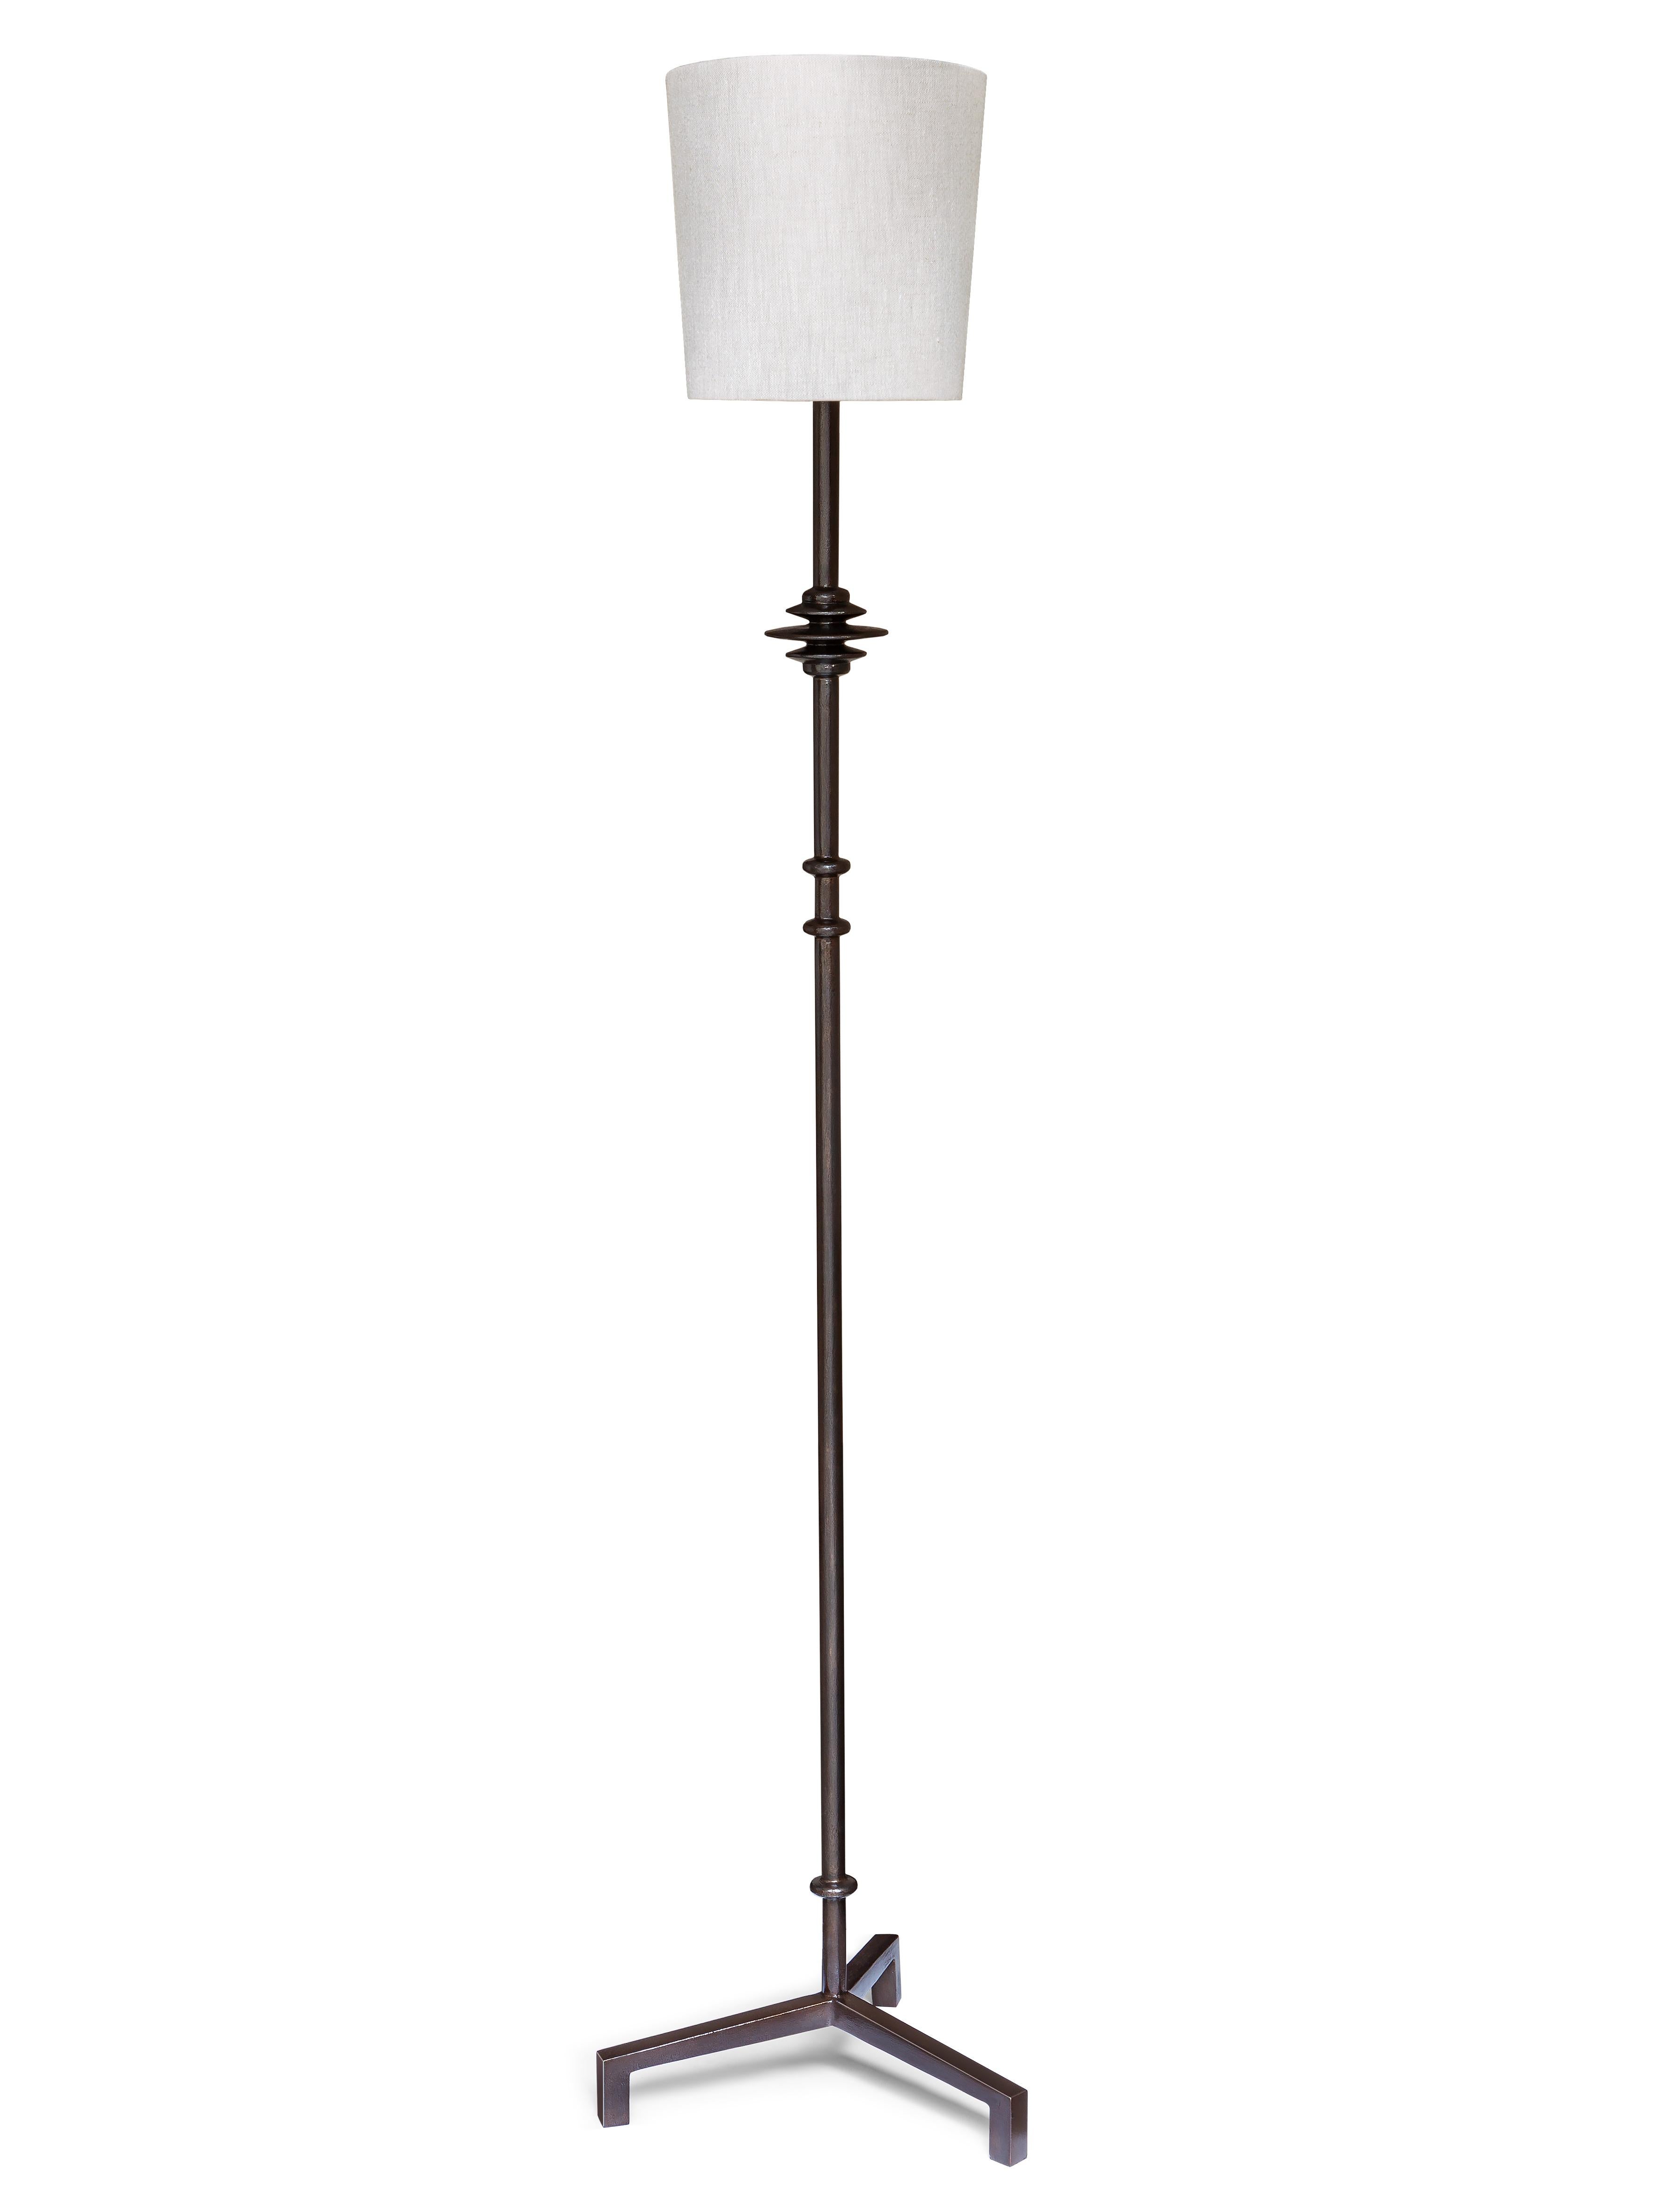 Stehleuchte aus handgearbeitetem Gips auf Metallarmatur, in der Giacometti-Manier.

Seidensatin  oder Lampenschirm aus Leinen, je nach Wunsch.
Abmessungen des Lampenschirms: Ø 20 oben x Ø 23 unten x H 23 cm / Ø 7,87″ oben x Ø 9″ unten x H 9″

LAMPE